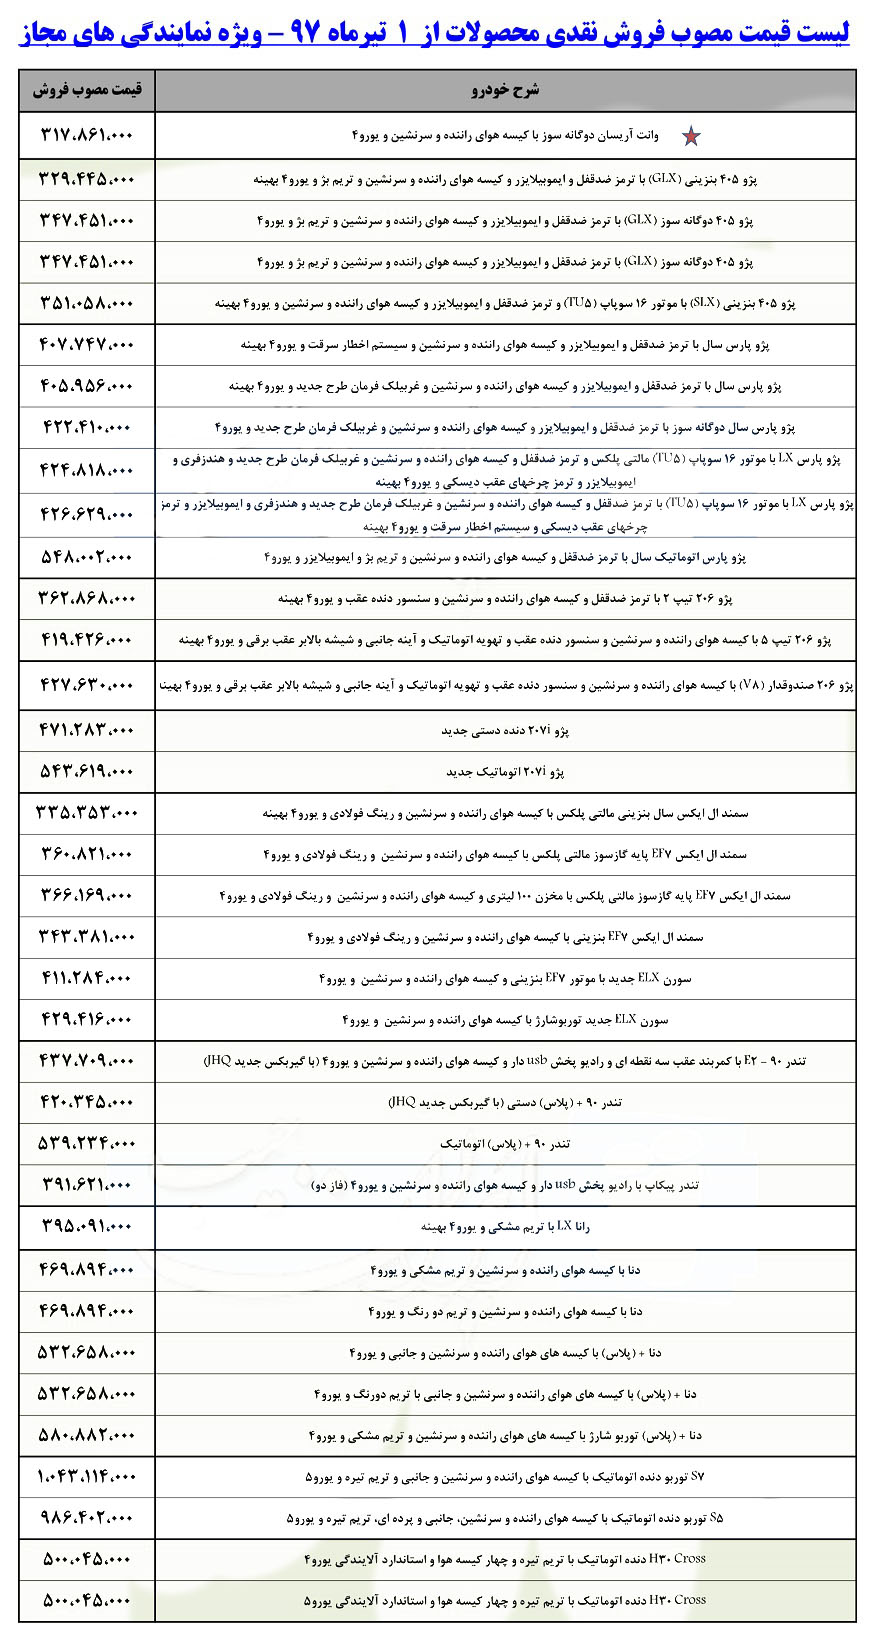 ایران خودرو 1 - لیست قیمت جدید کلیه محصولات ایران خودرو - تیرماه 97